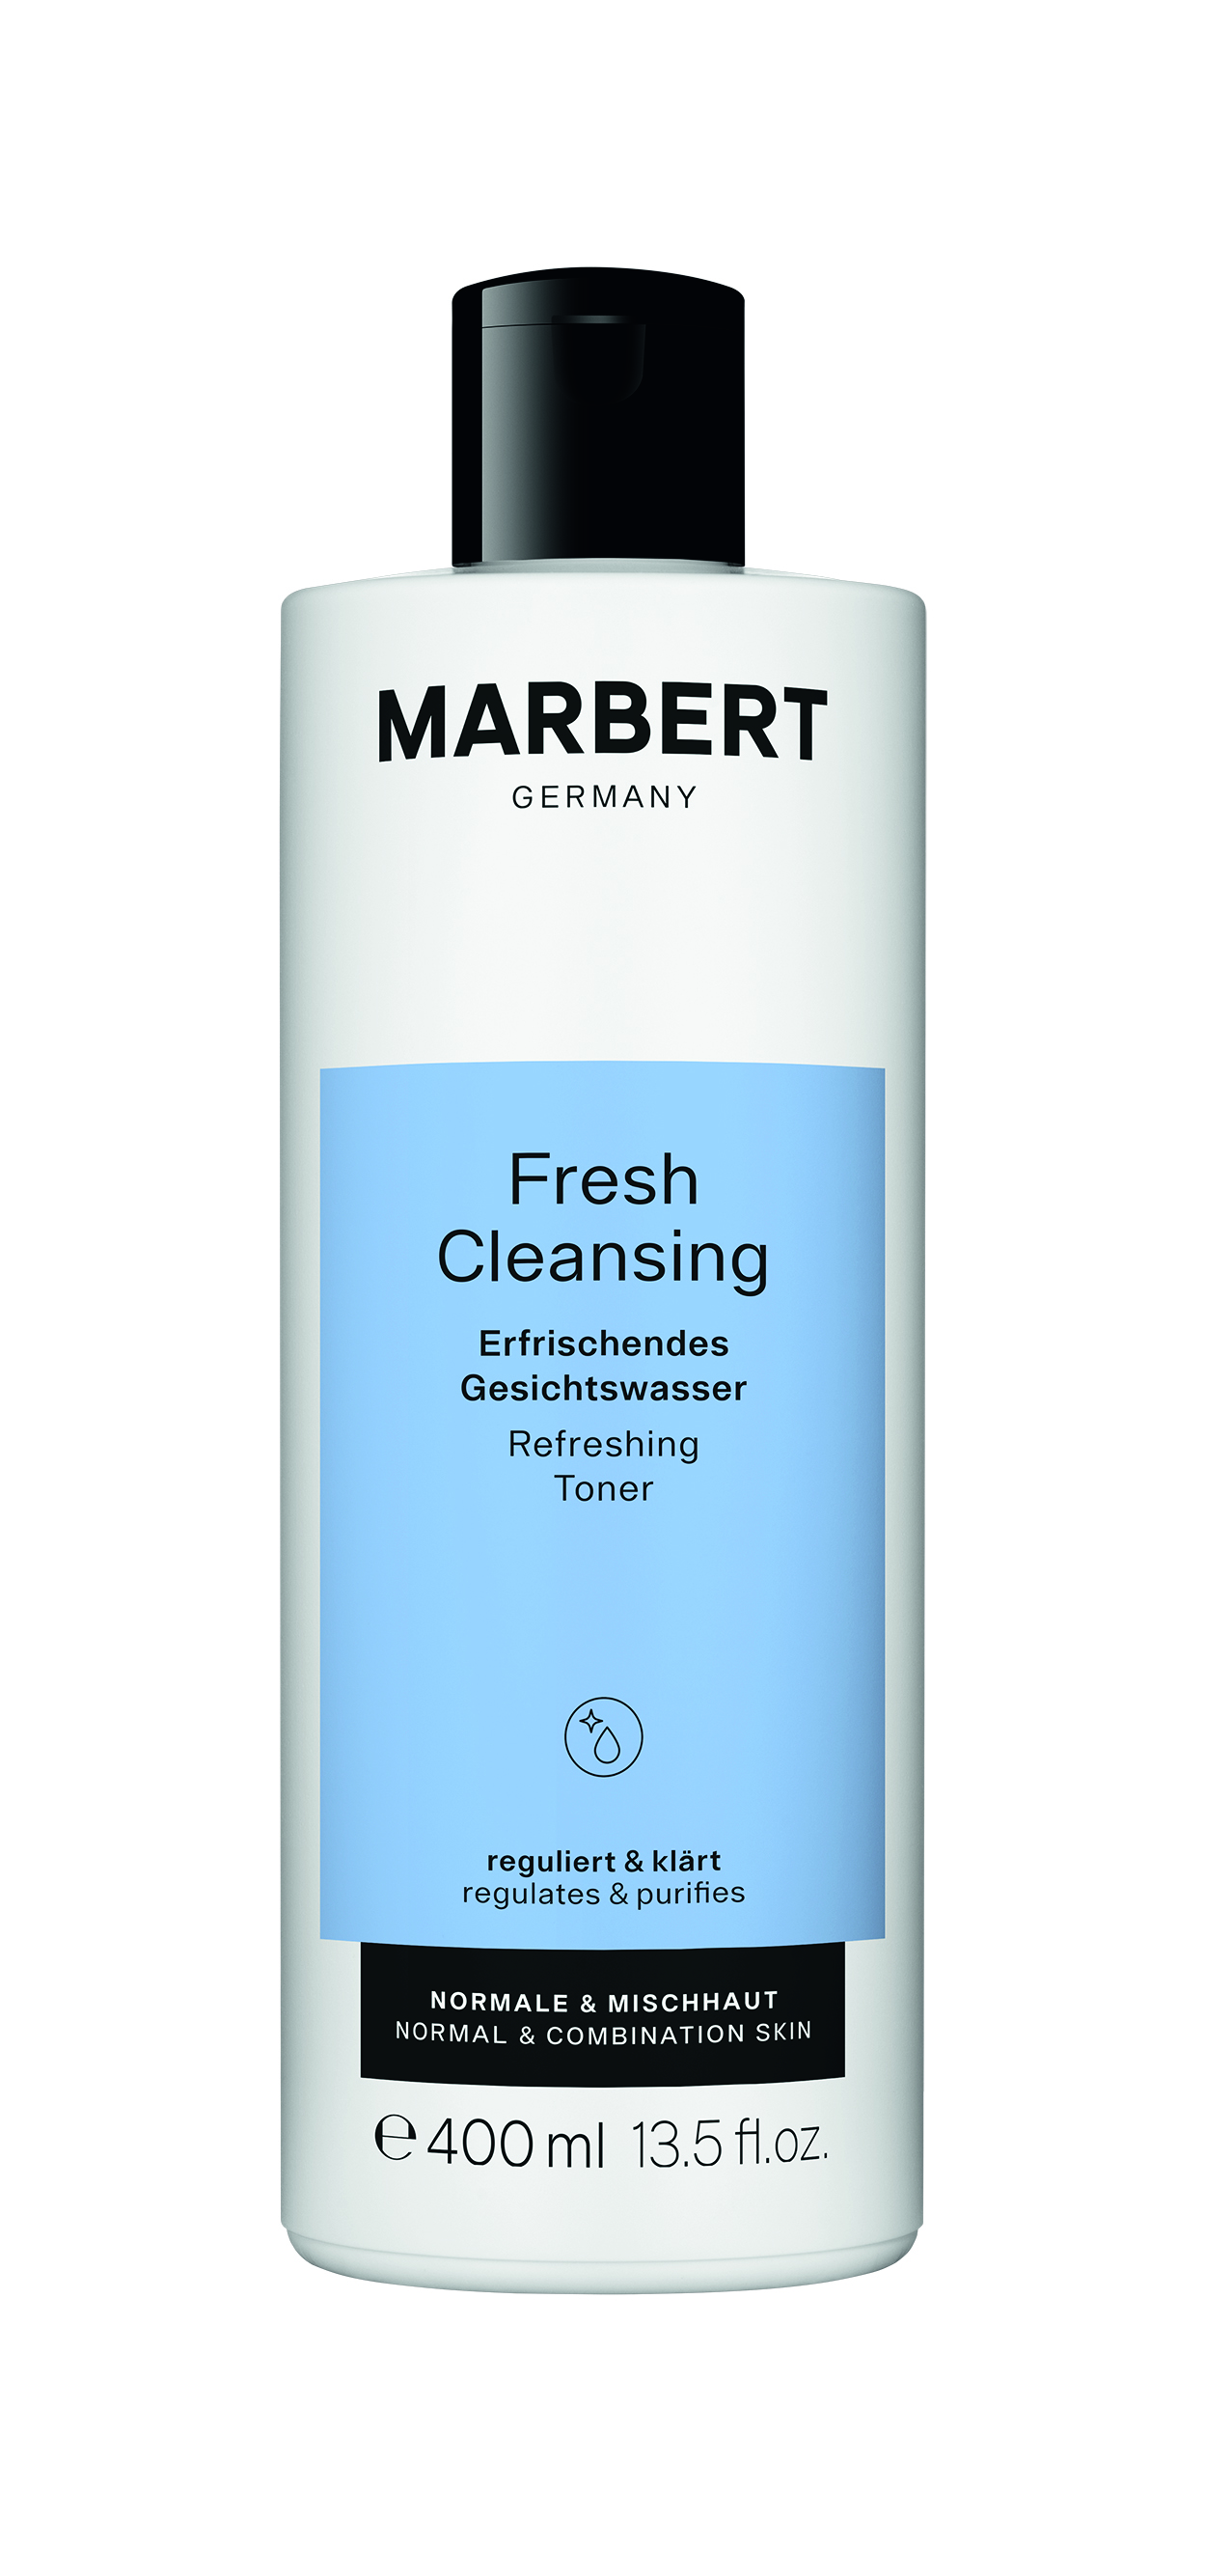 Fresh Cleansing - Erfrischendes Gesichtswasser